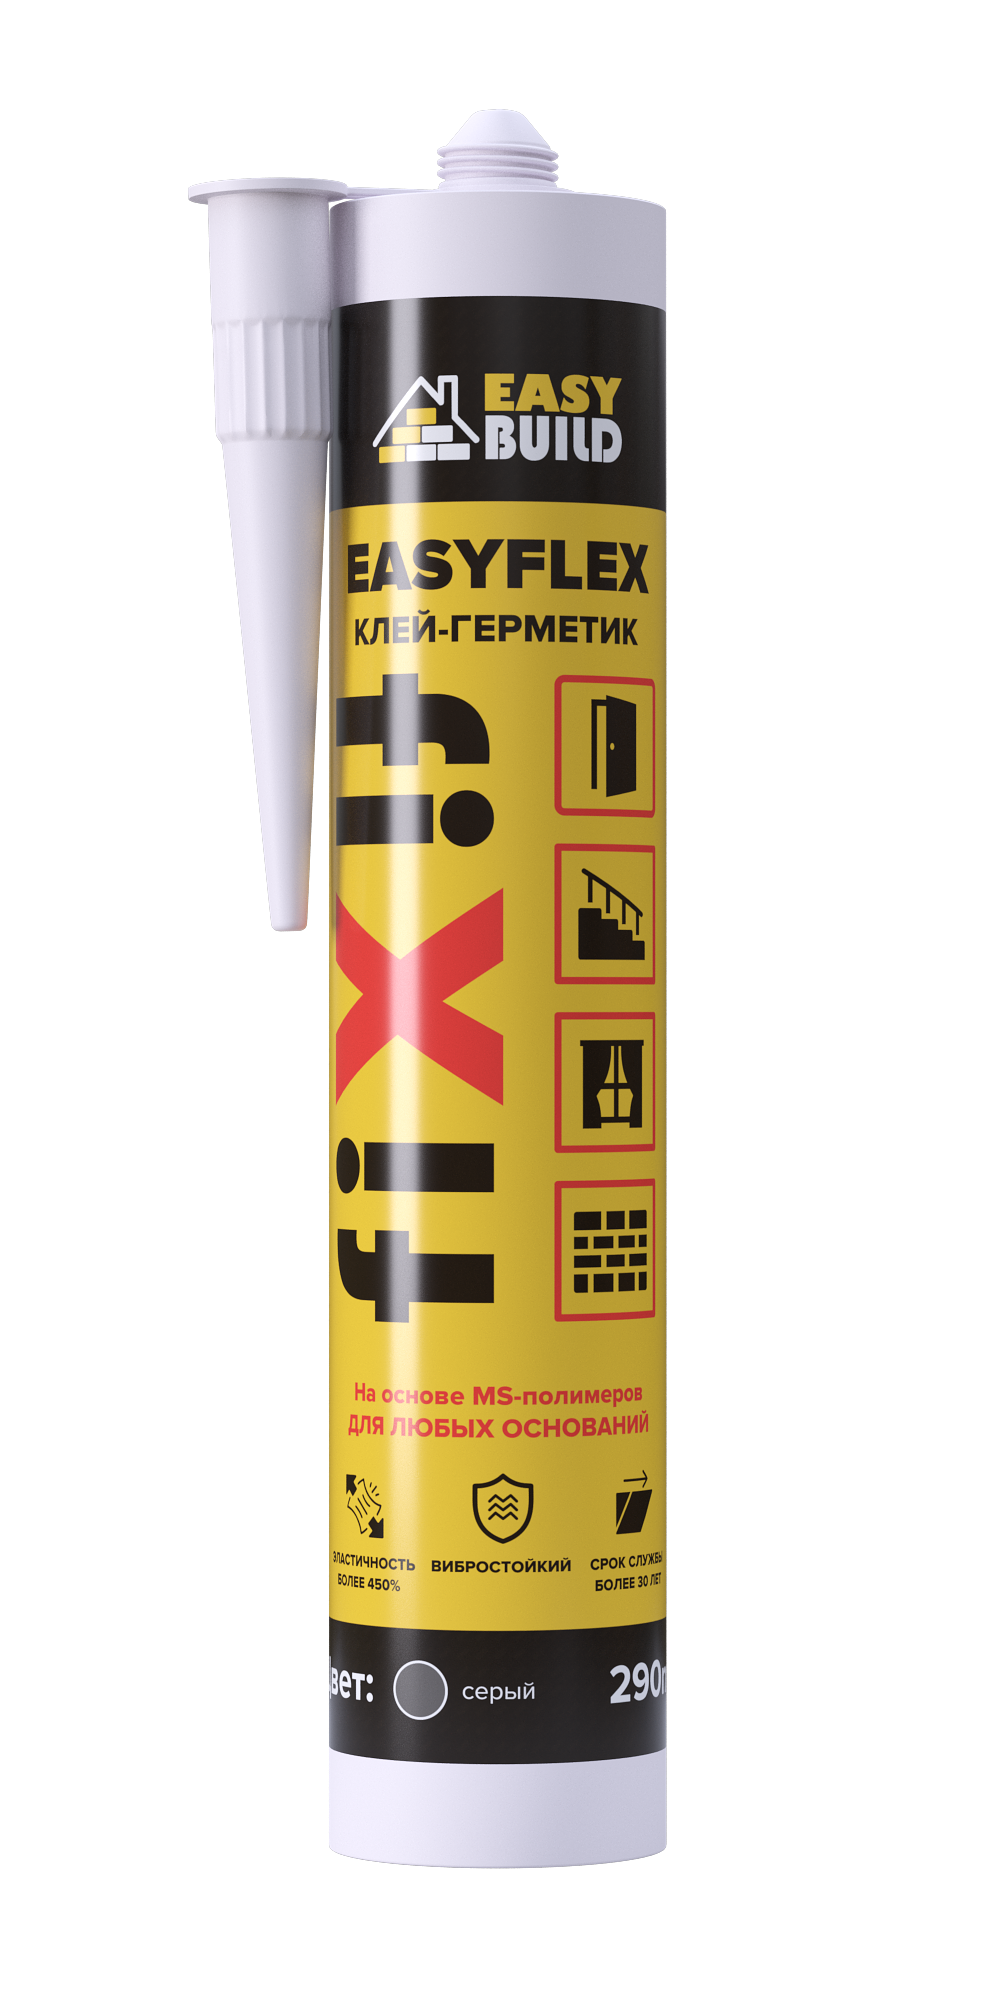 Клей-герметик мультифункциональный Easyflex Fix серый диффузионный клей герметик для жесткого пвх cosmofen